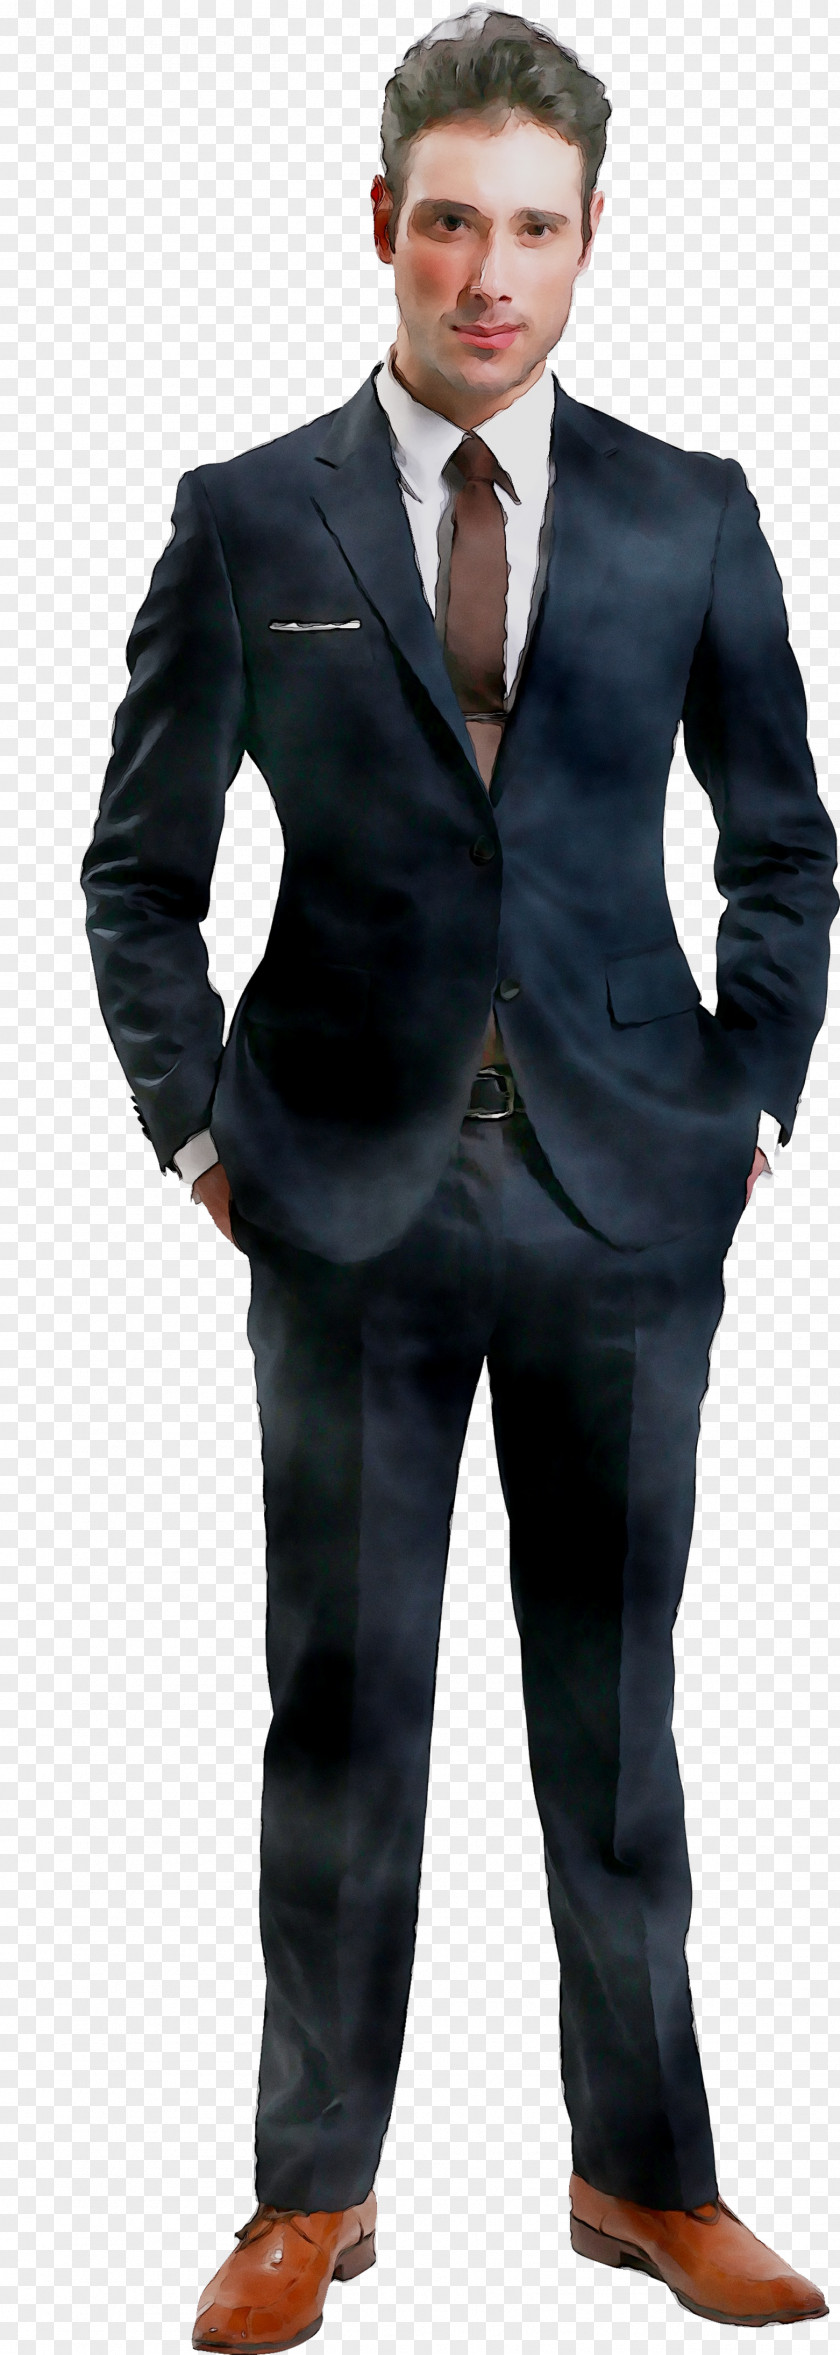 Tuxedo Suit T-shirt Man PNG